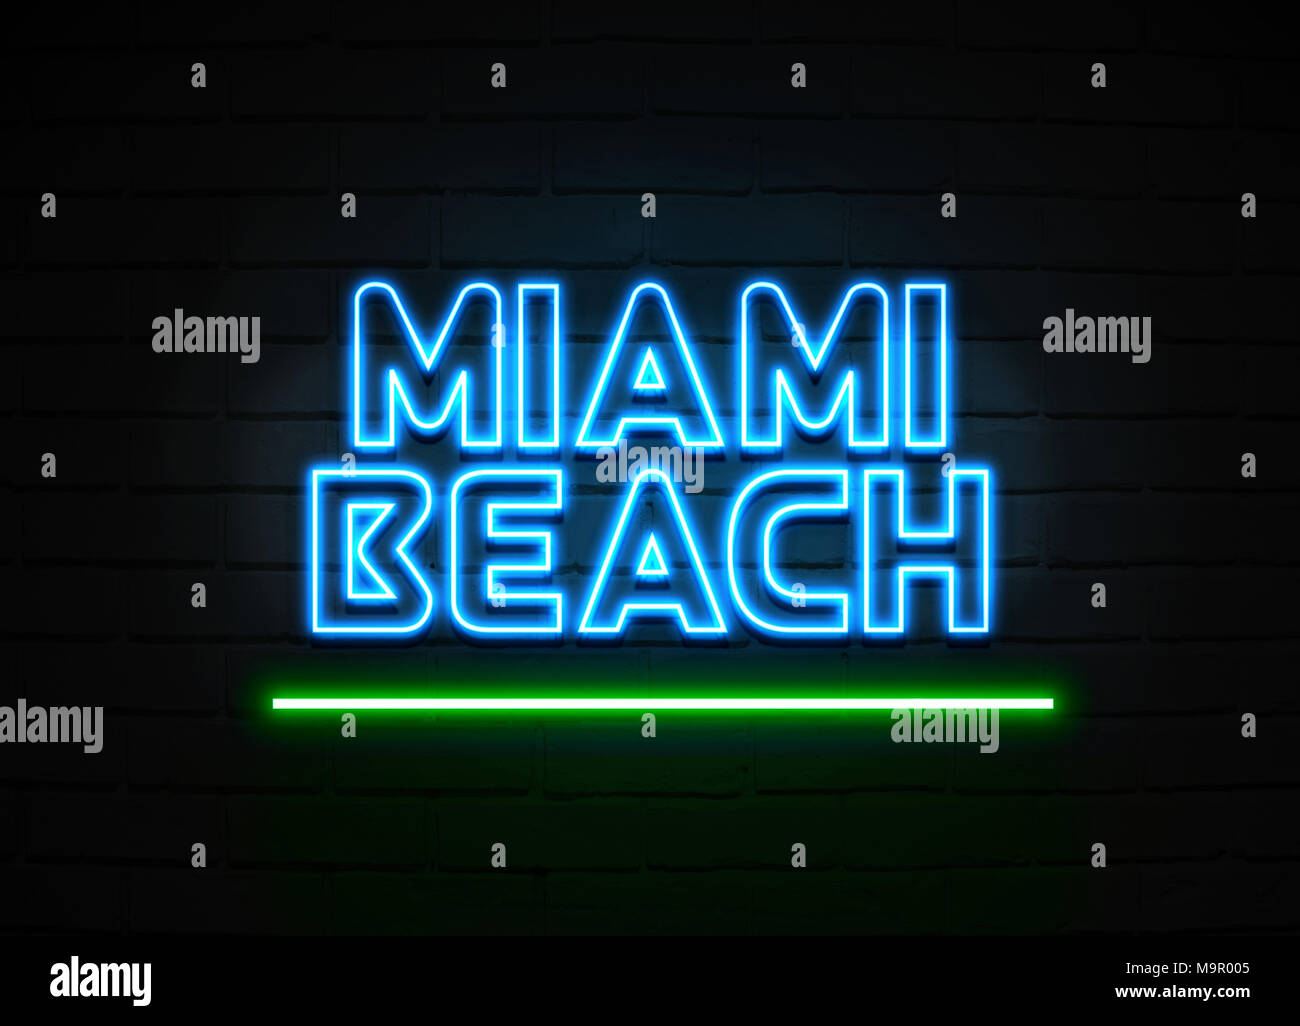 Miami Beach en néon - Glowing Neon Sign sur mur brickwall - rendu 3D illustration libres de droits. Banque D'Images